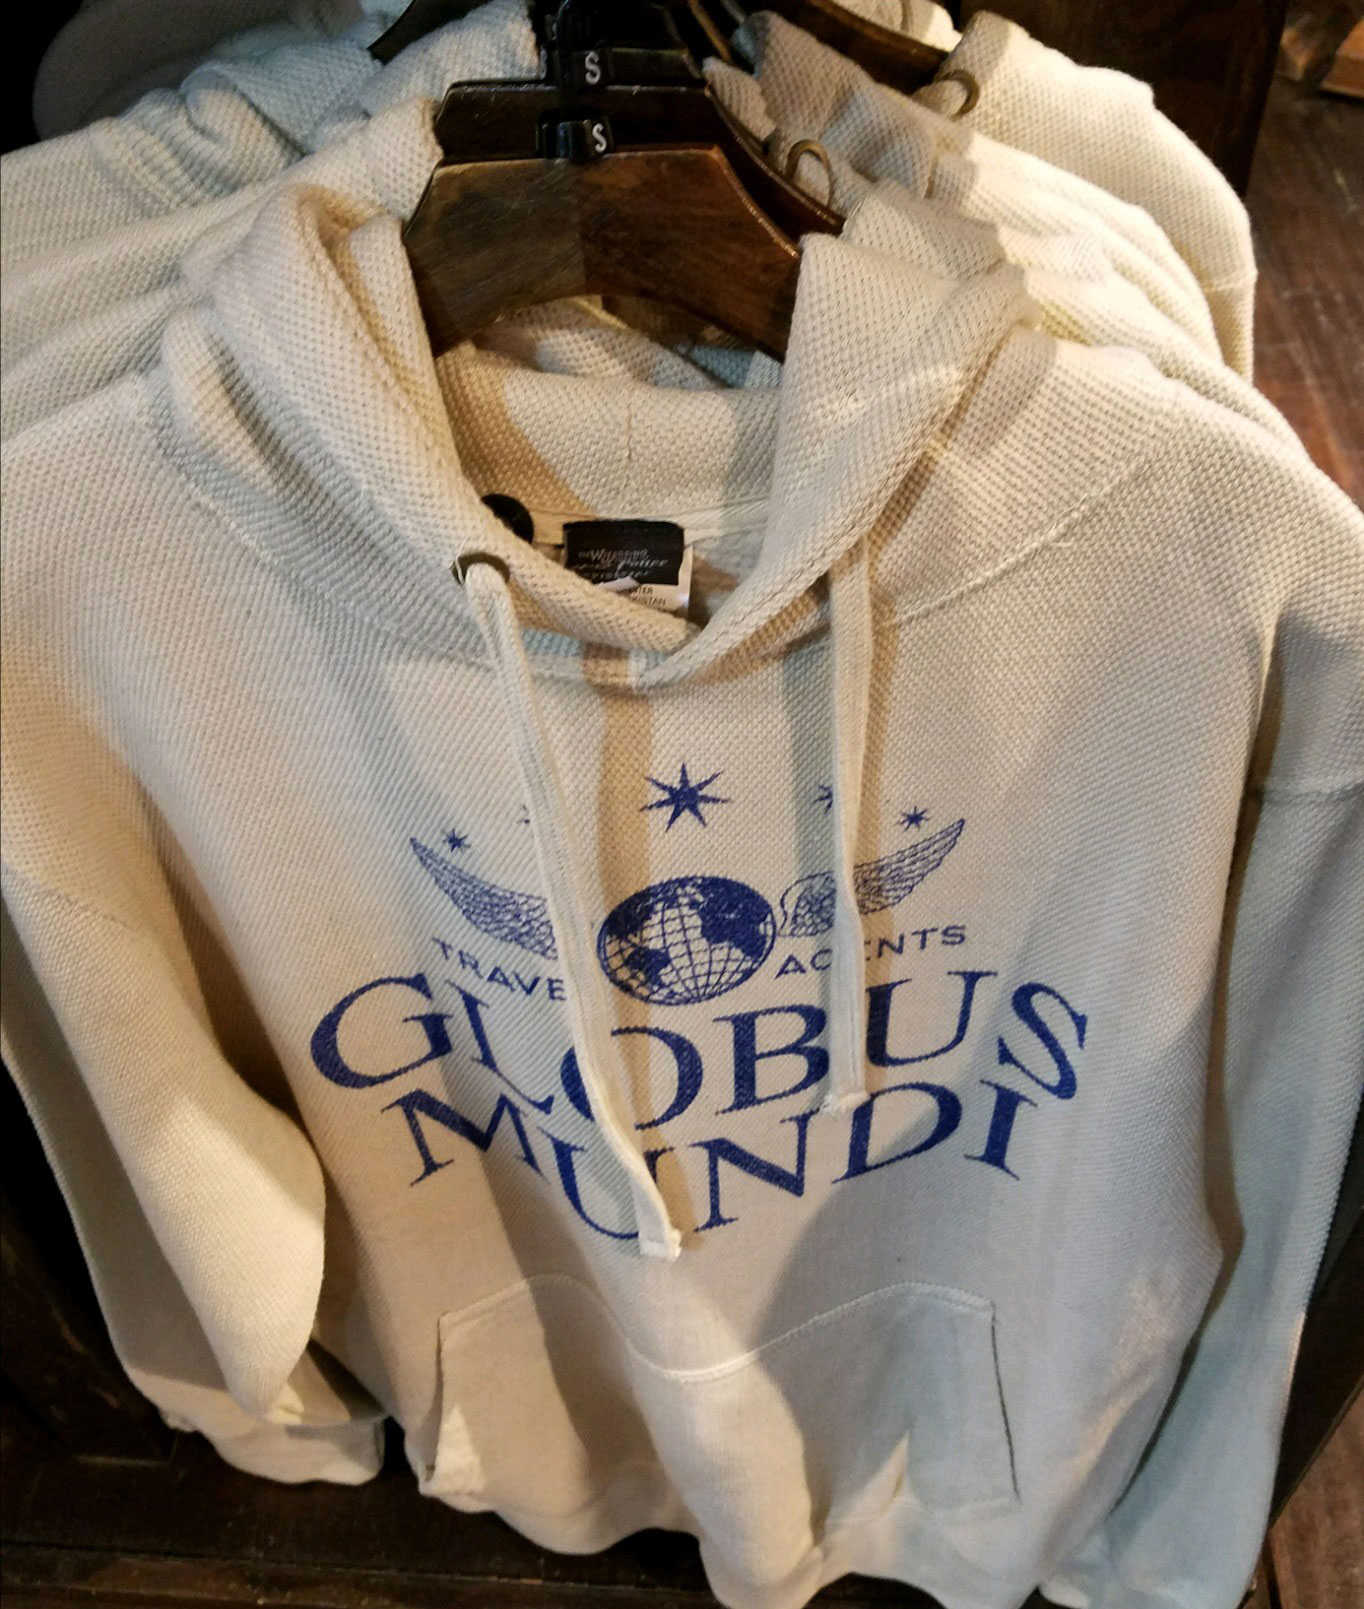 Globus Mundi sweatshirt